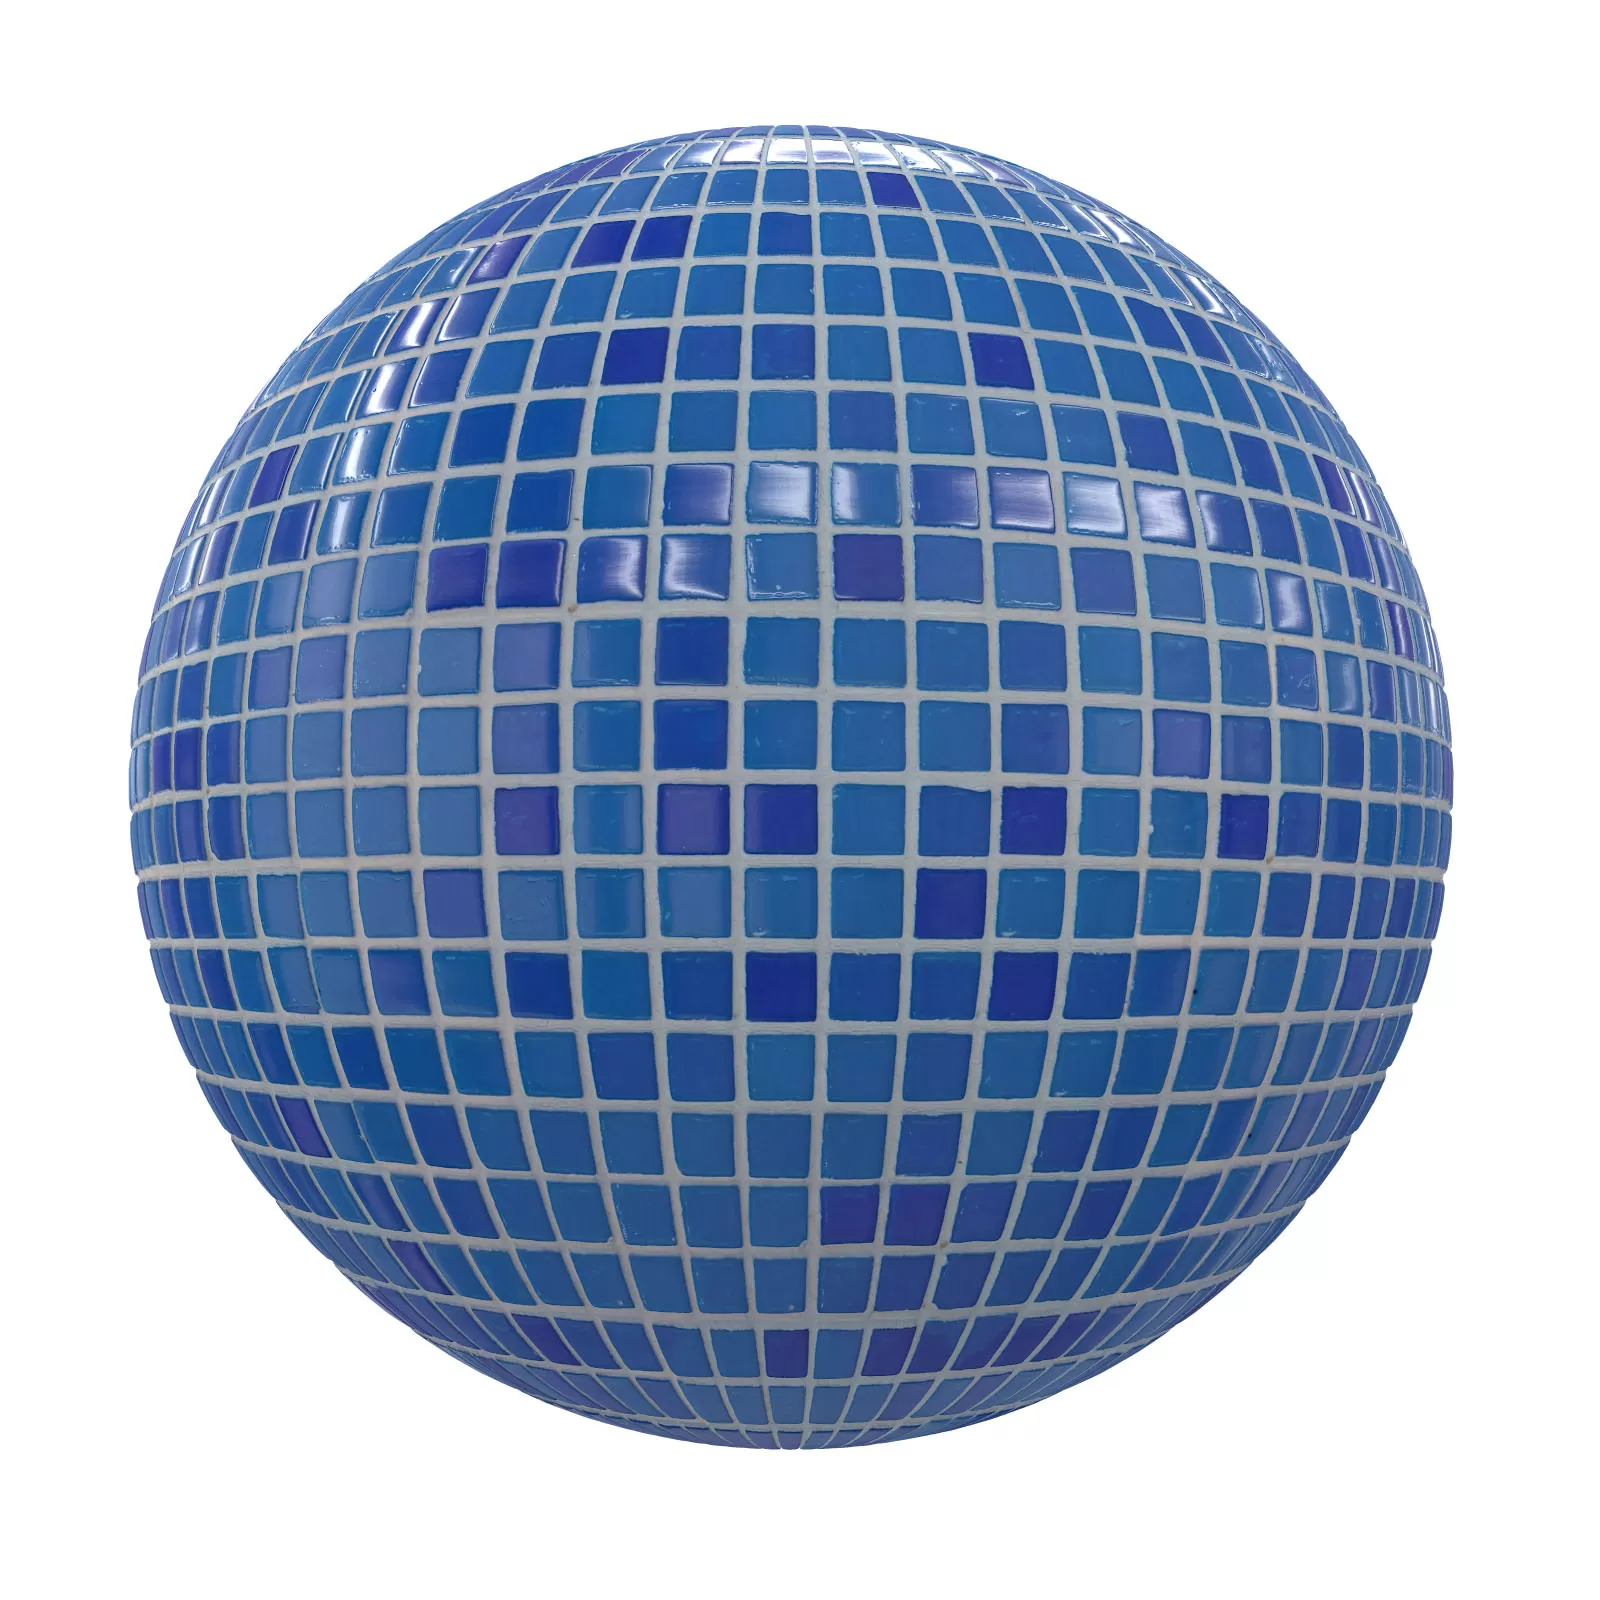 PBR CGAXIS TEXTURES – TILES – Blue Tiles 3